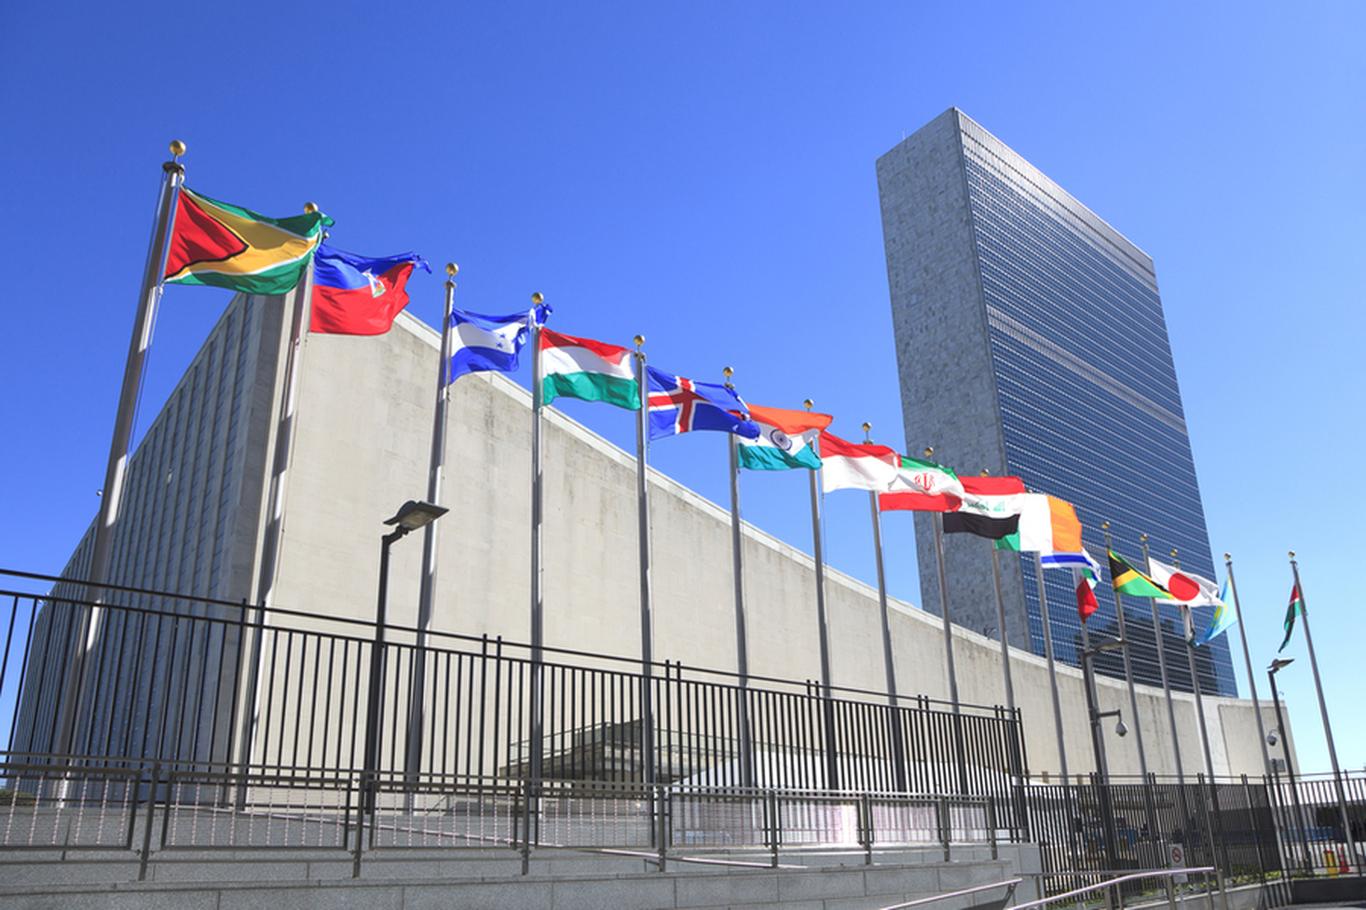 Viimati  VERSOBANK AS -i juhtinud Aivo Adamson leidis uue töö ÜRO-s, kus hakkab organisatsiooni arenguprogrammile digitaliseerimislahendusi pakkuma, kirjutab  Ä